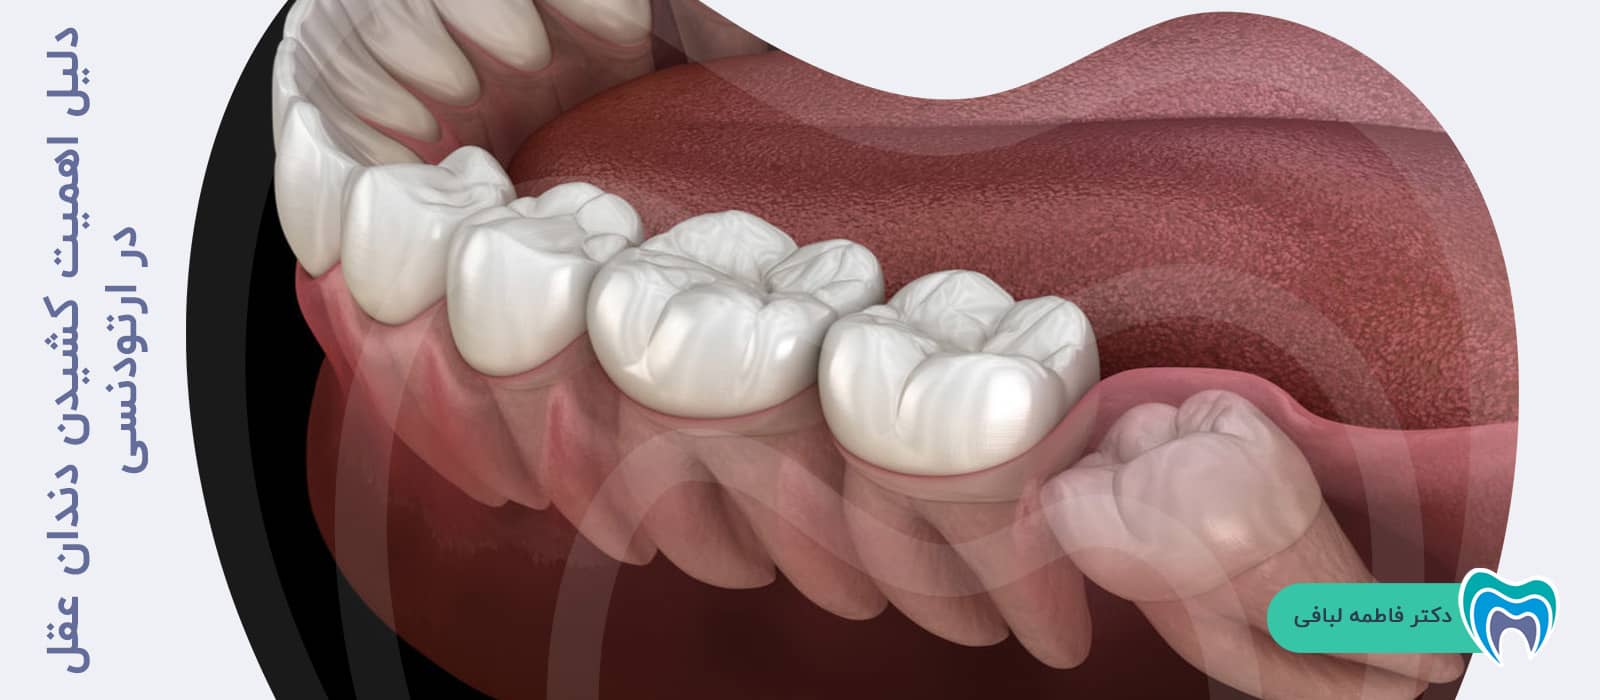 دلیل اهمیت کشیدن دندان عقل در ارتودنسی